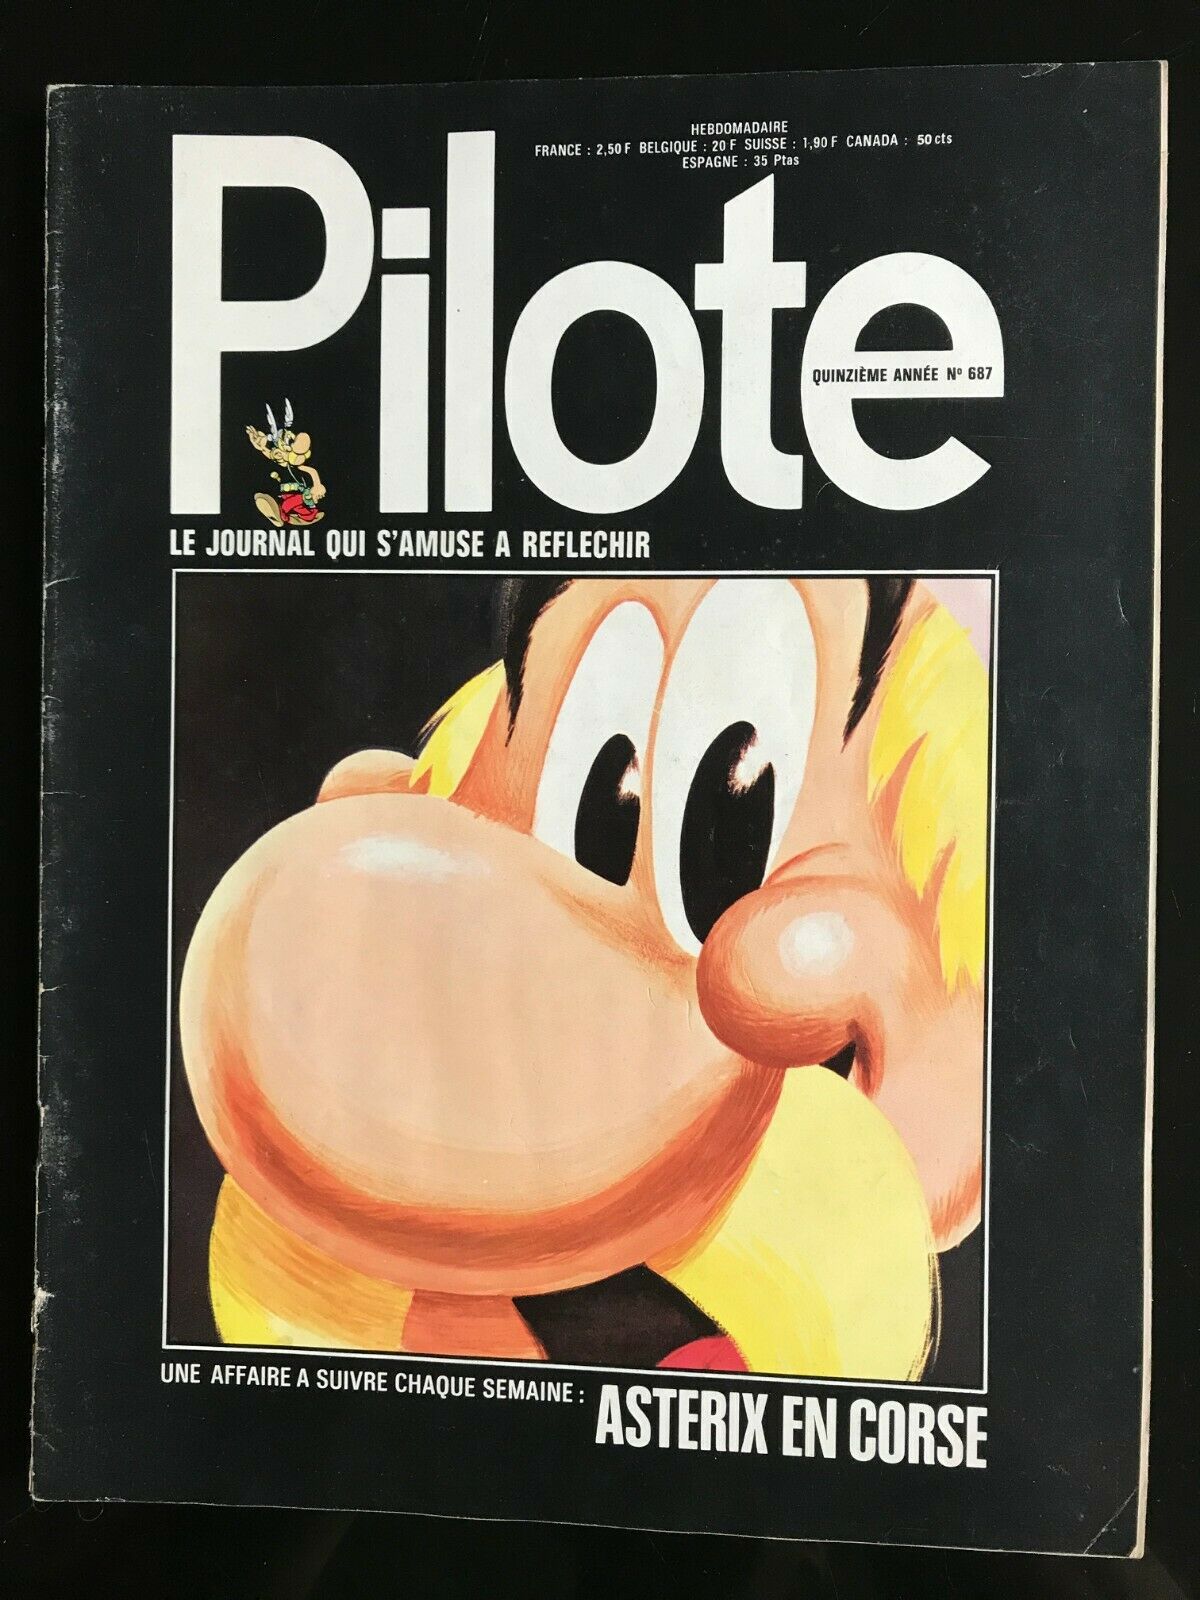 Couverture de Pilote n° 687 (04 janvier 1973) annonçant le début de la prépublication.